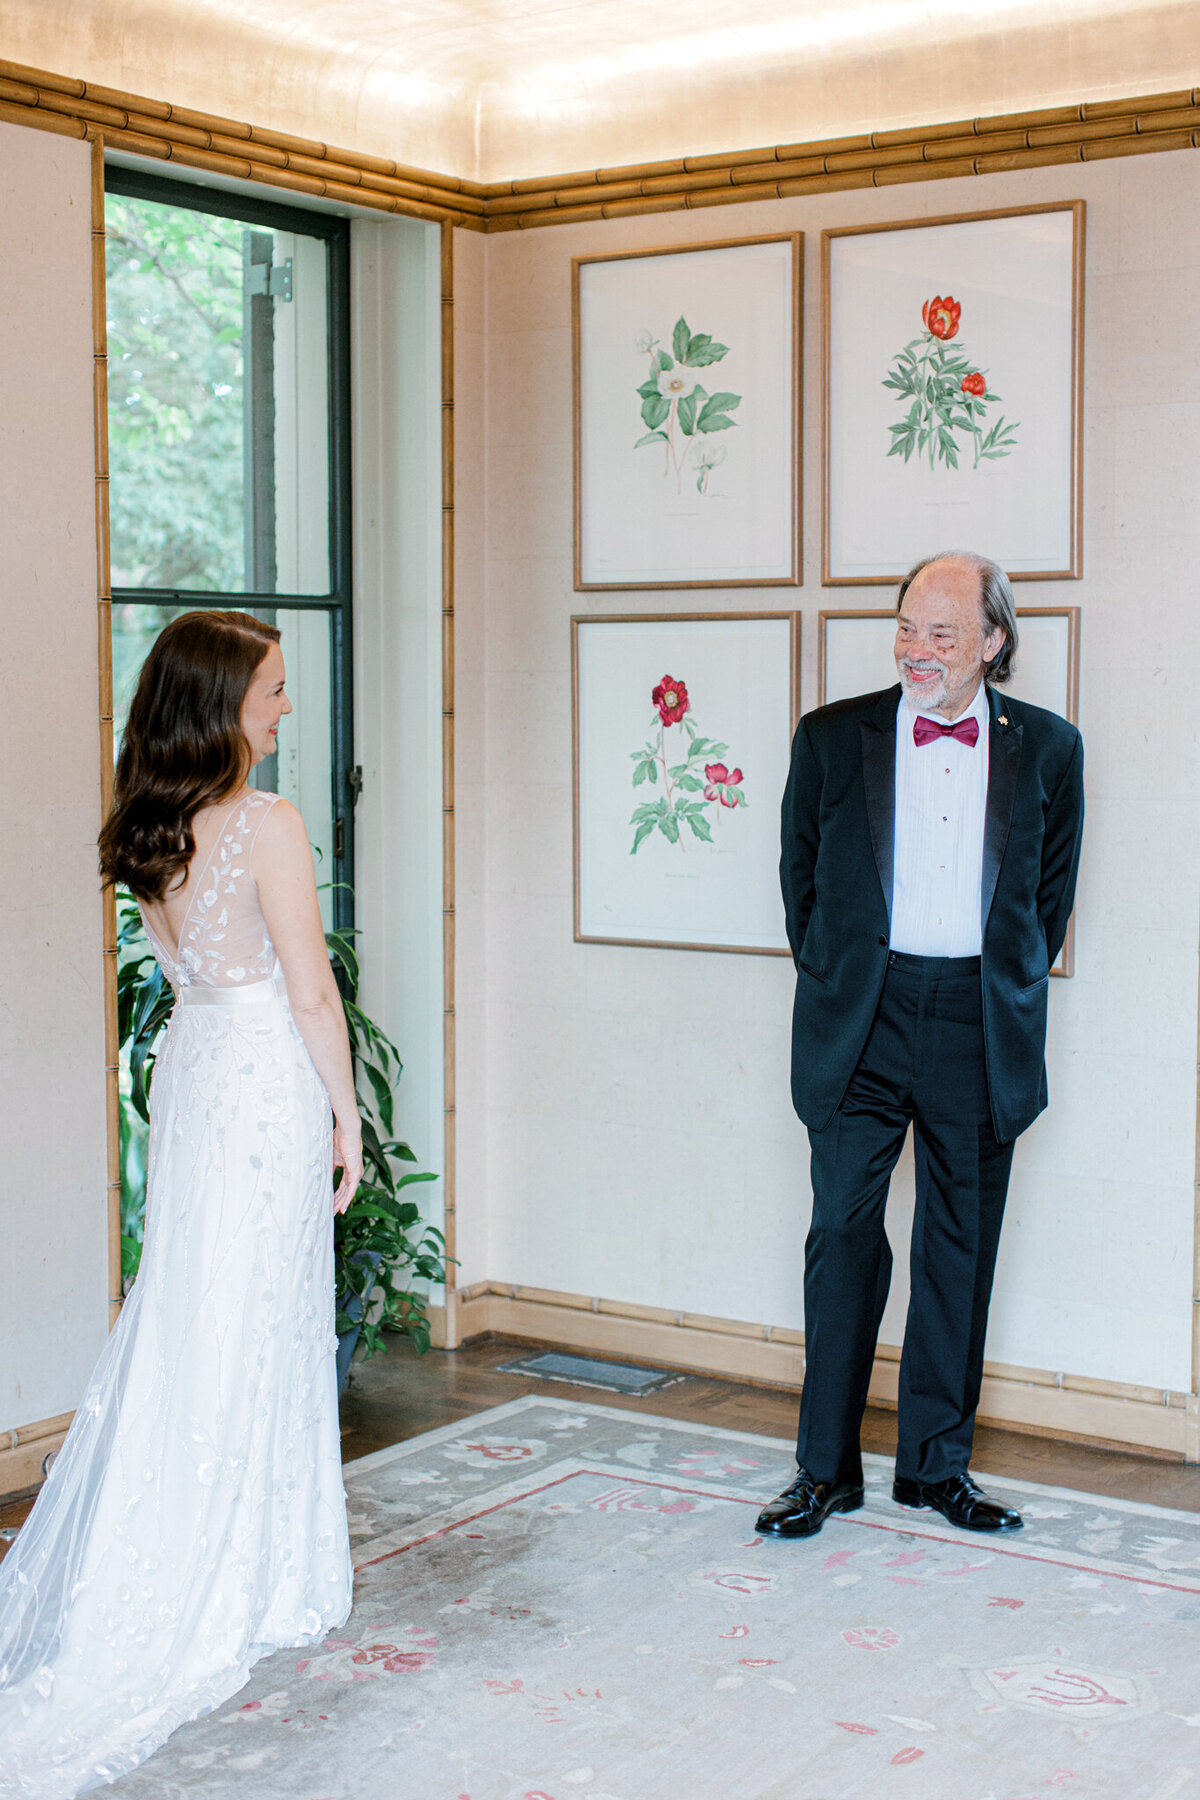 Gena & Matt's Wedding at the Dallas Arboretum | Dallas Wedding Photographer | Sami Kathryn Photography-58